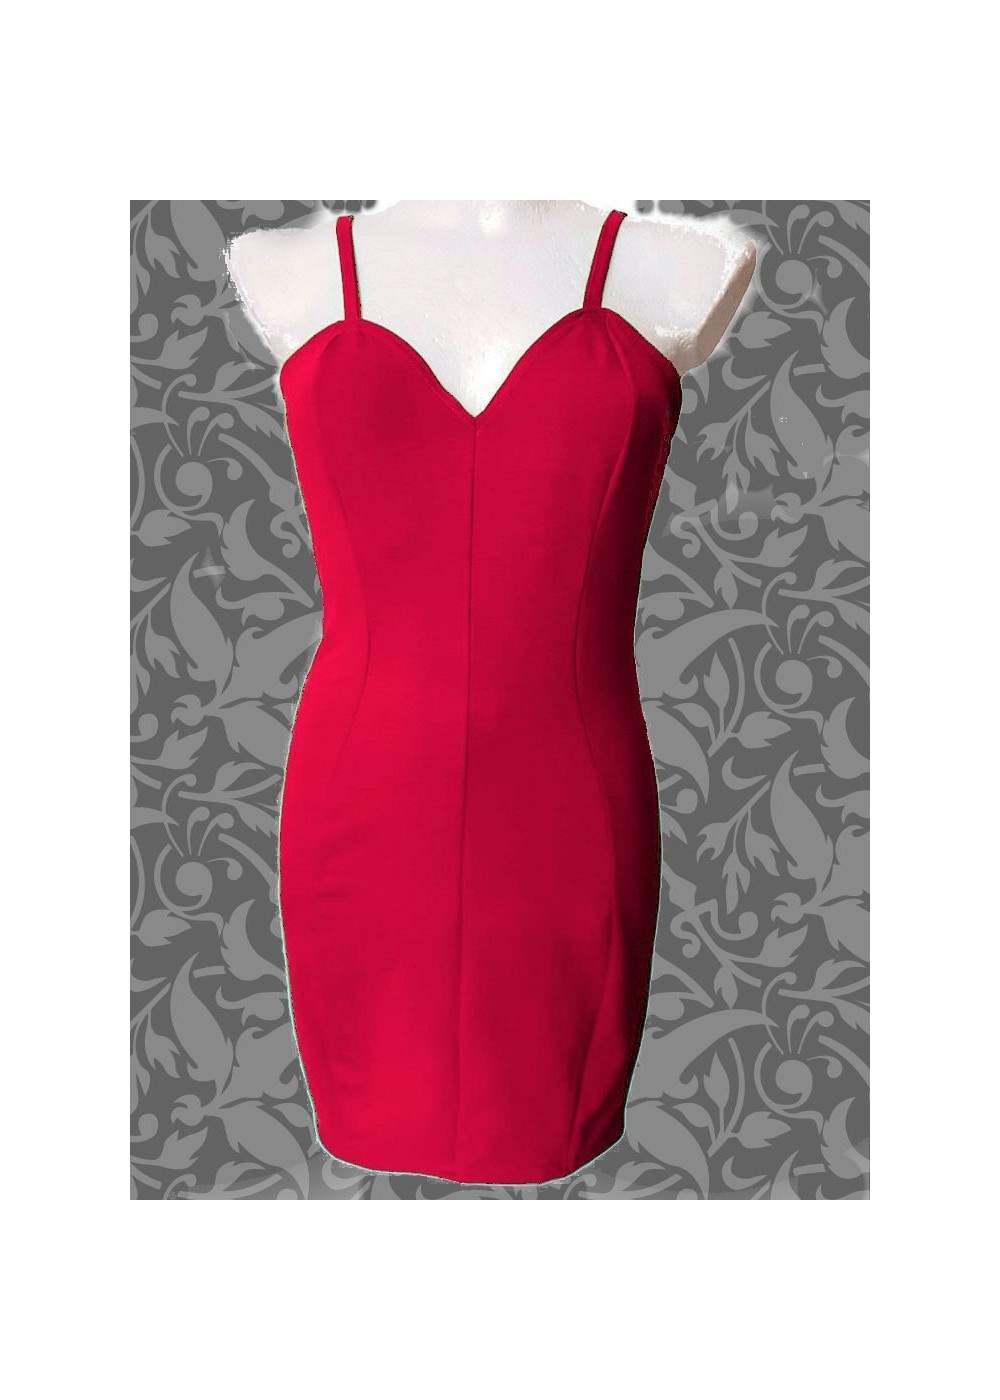 Vestido rojo de tirantes de algodón Vestido de cóctel de la talla 34 - 52 - 